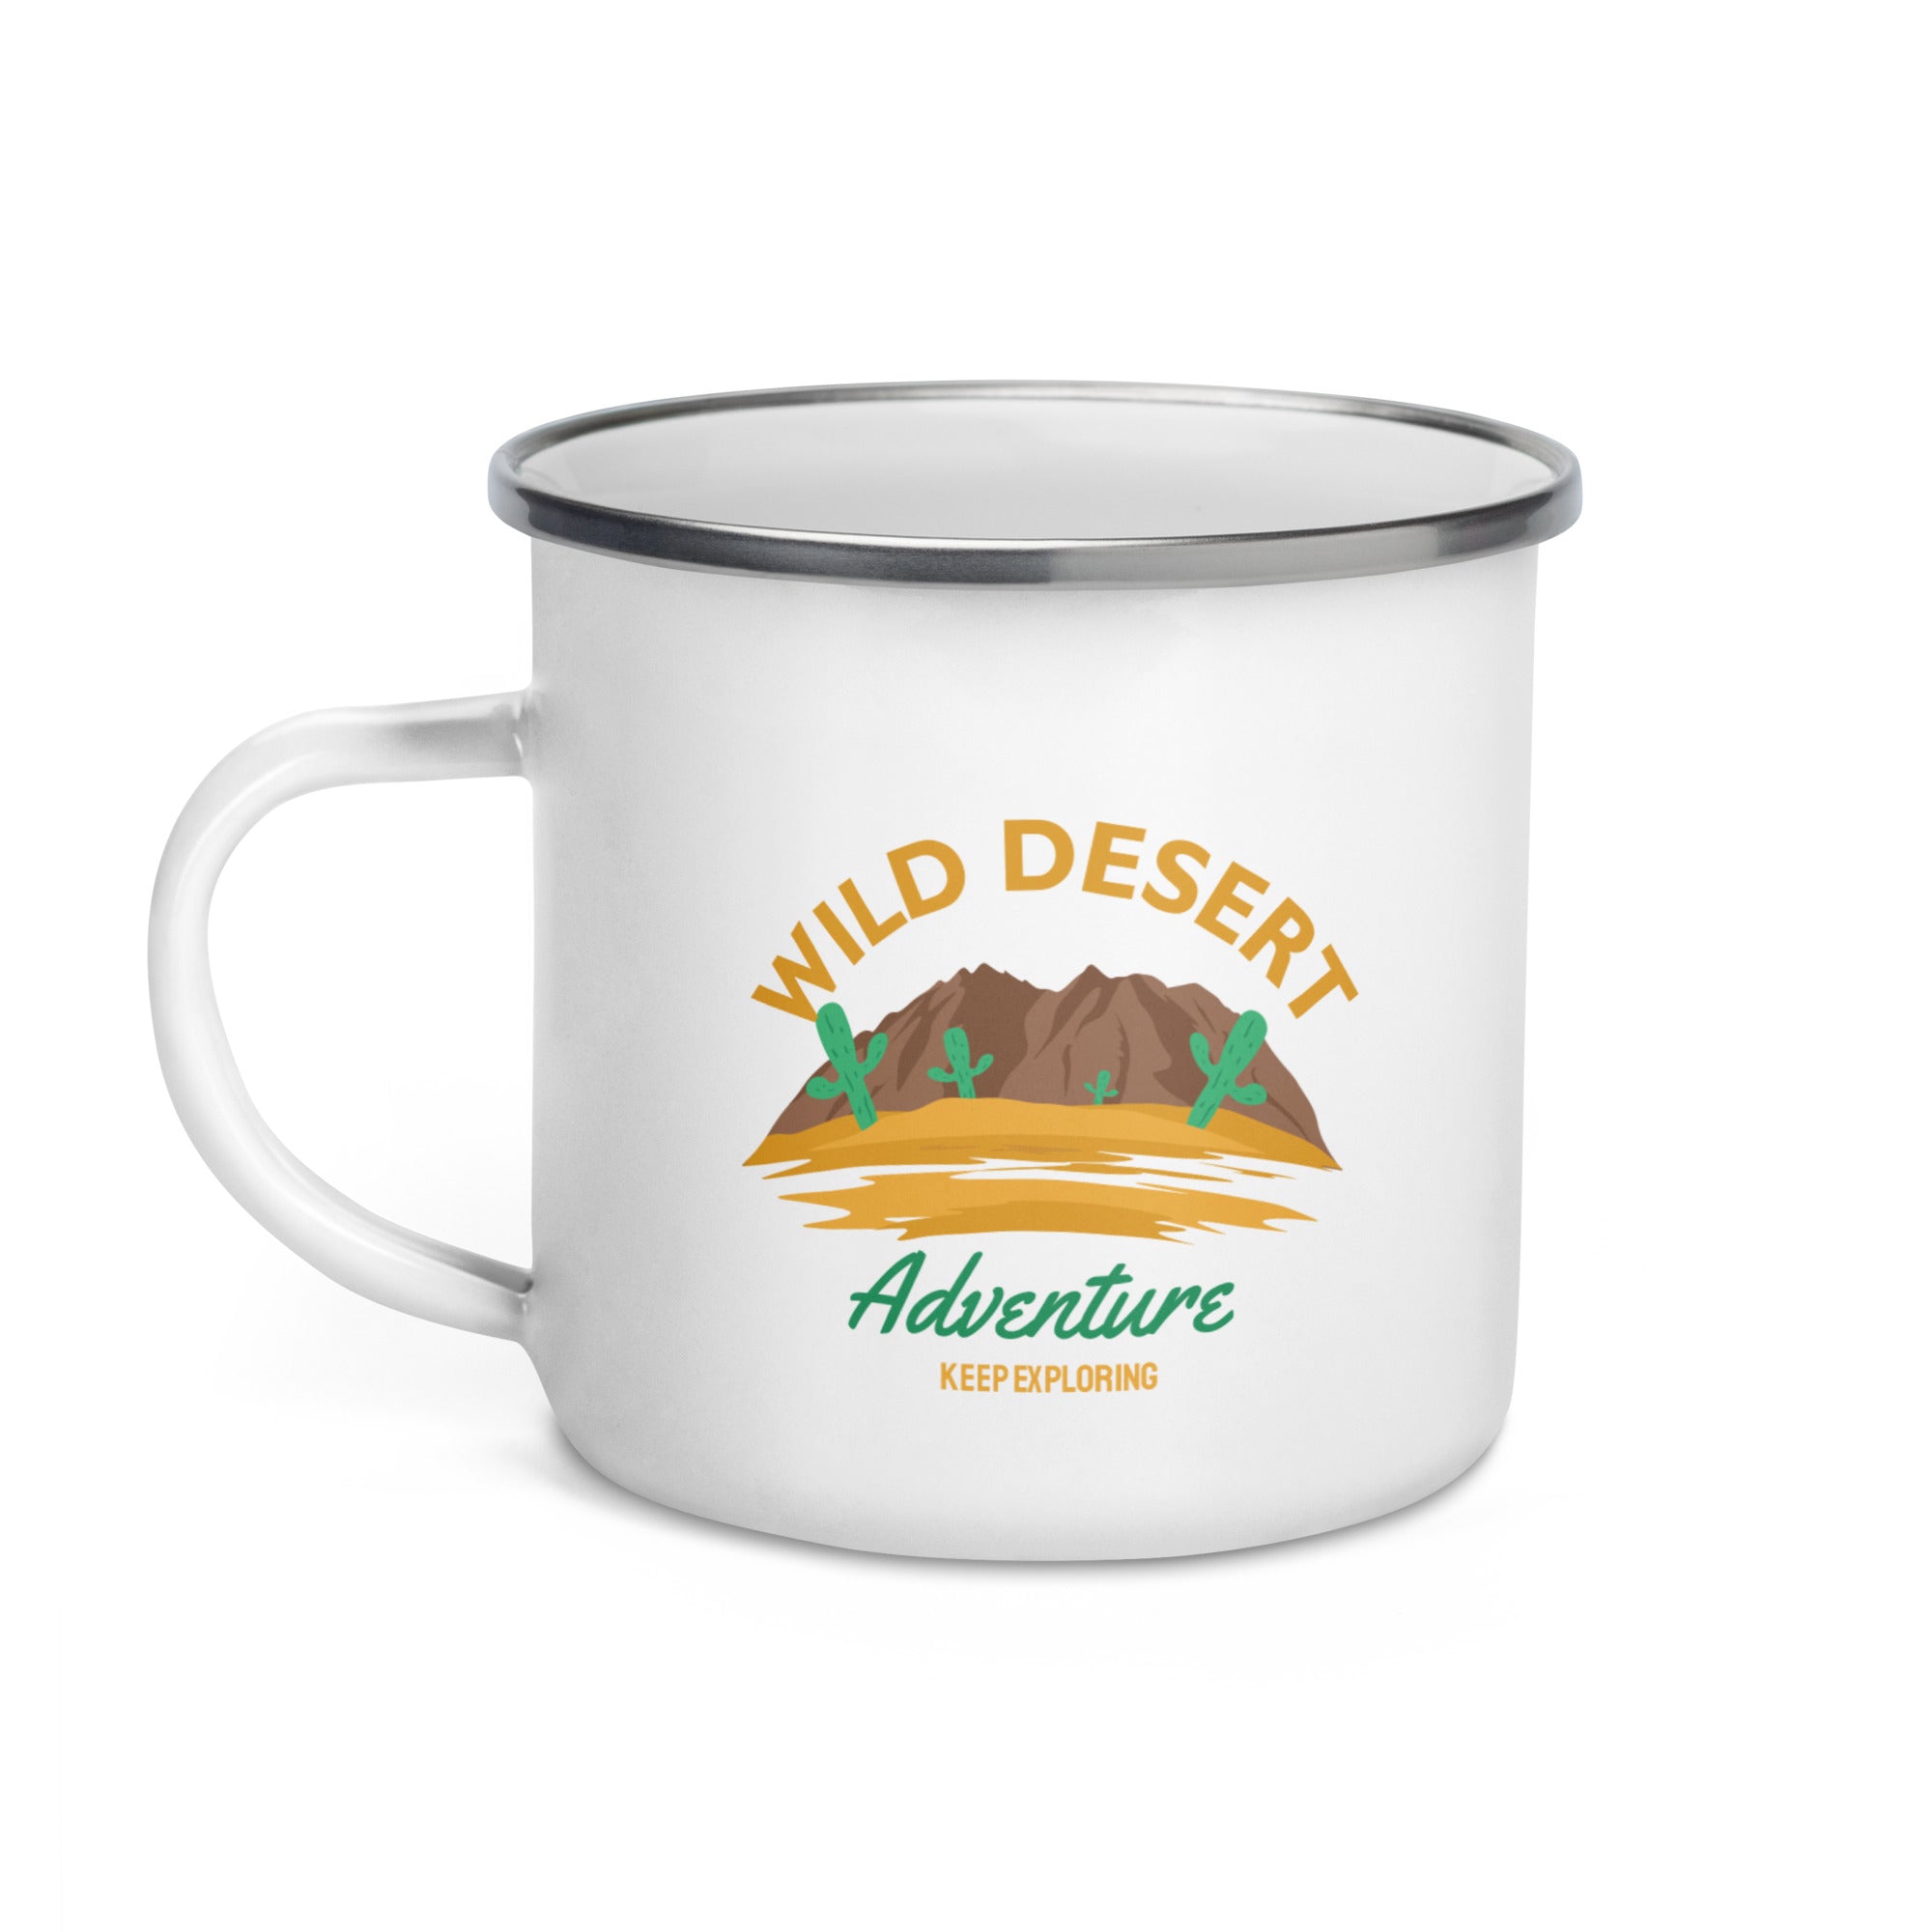 Wild Desert Adventure- Enamel Mug